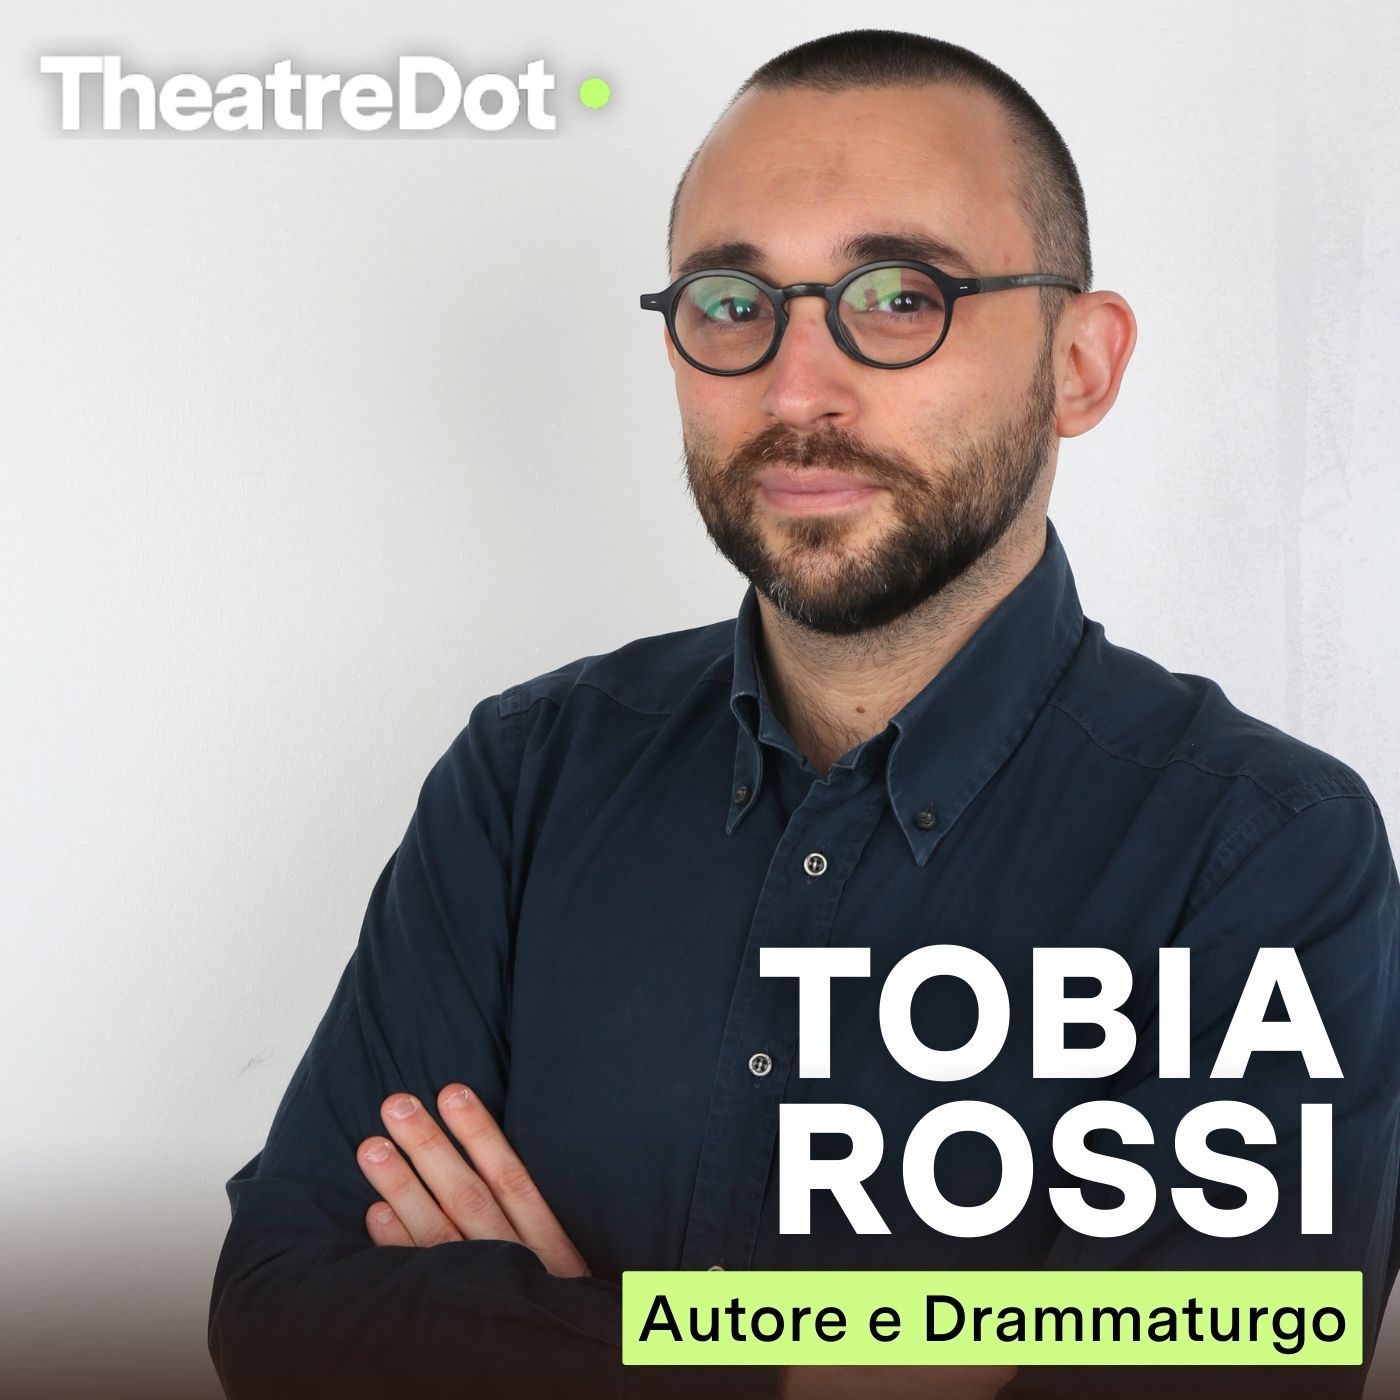 TOBIA ROSSI (Autore e Drammaturgo) | "La curiosità è alla base di tutto"